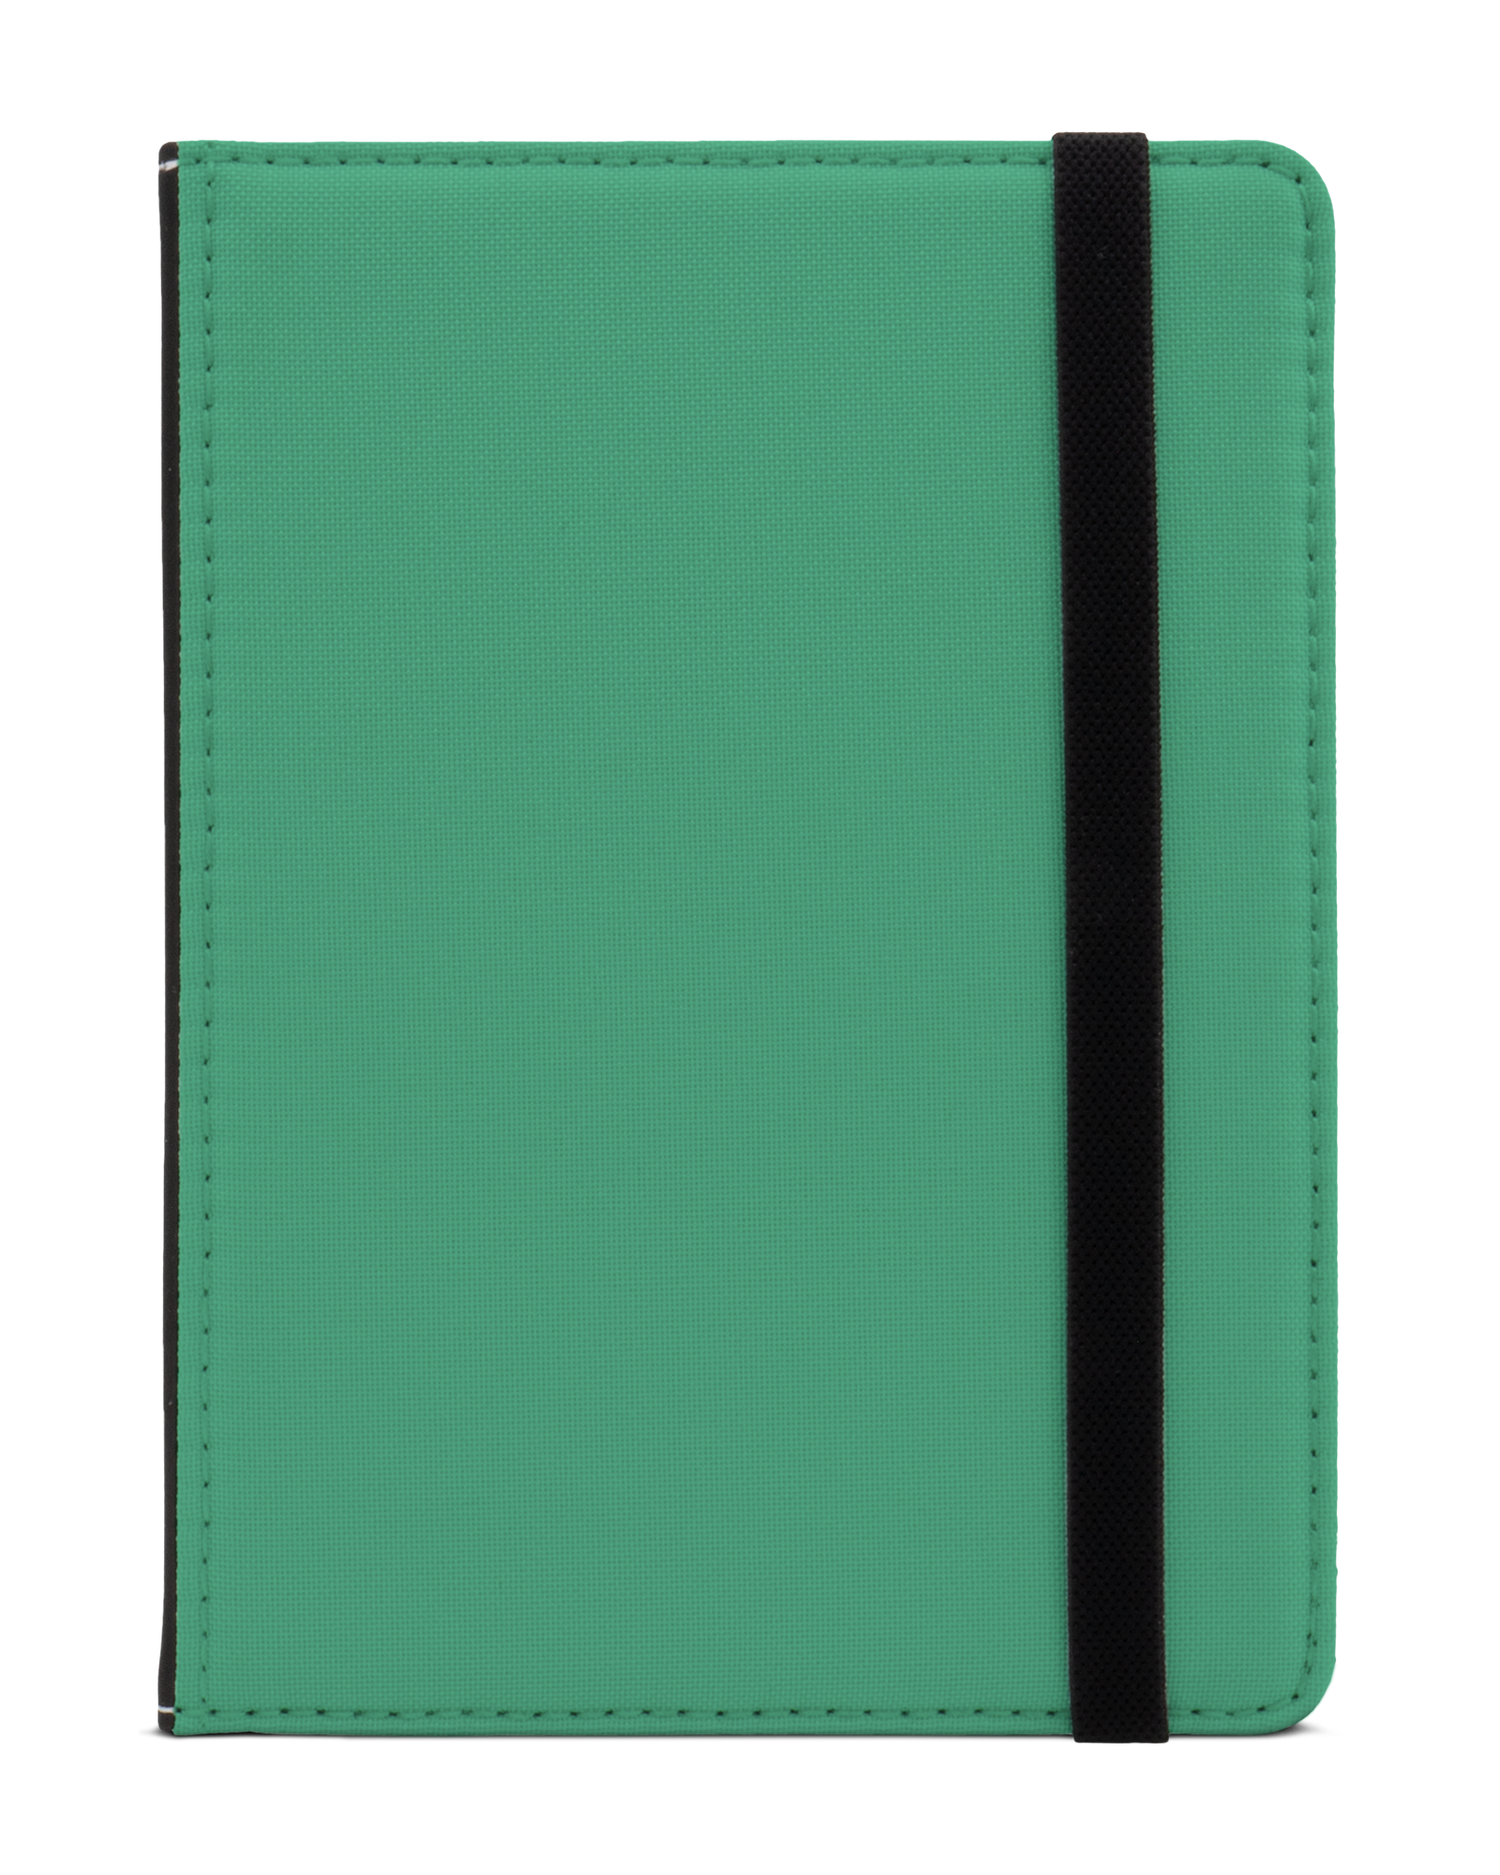 ISG Neon Green eBook Reader Hülle XS: Frontansicht